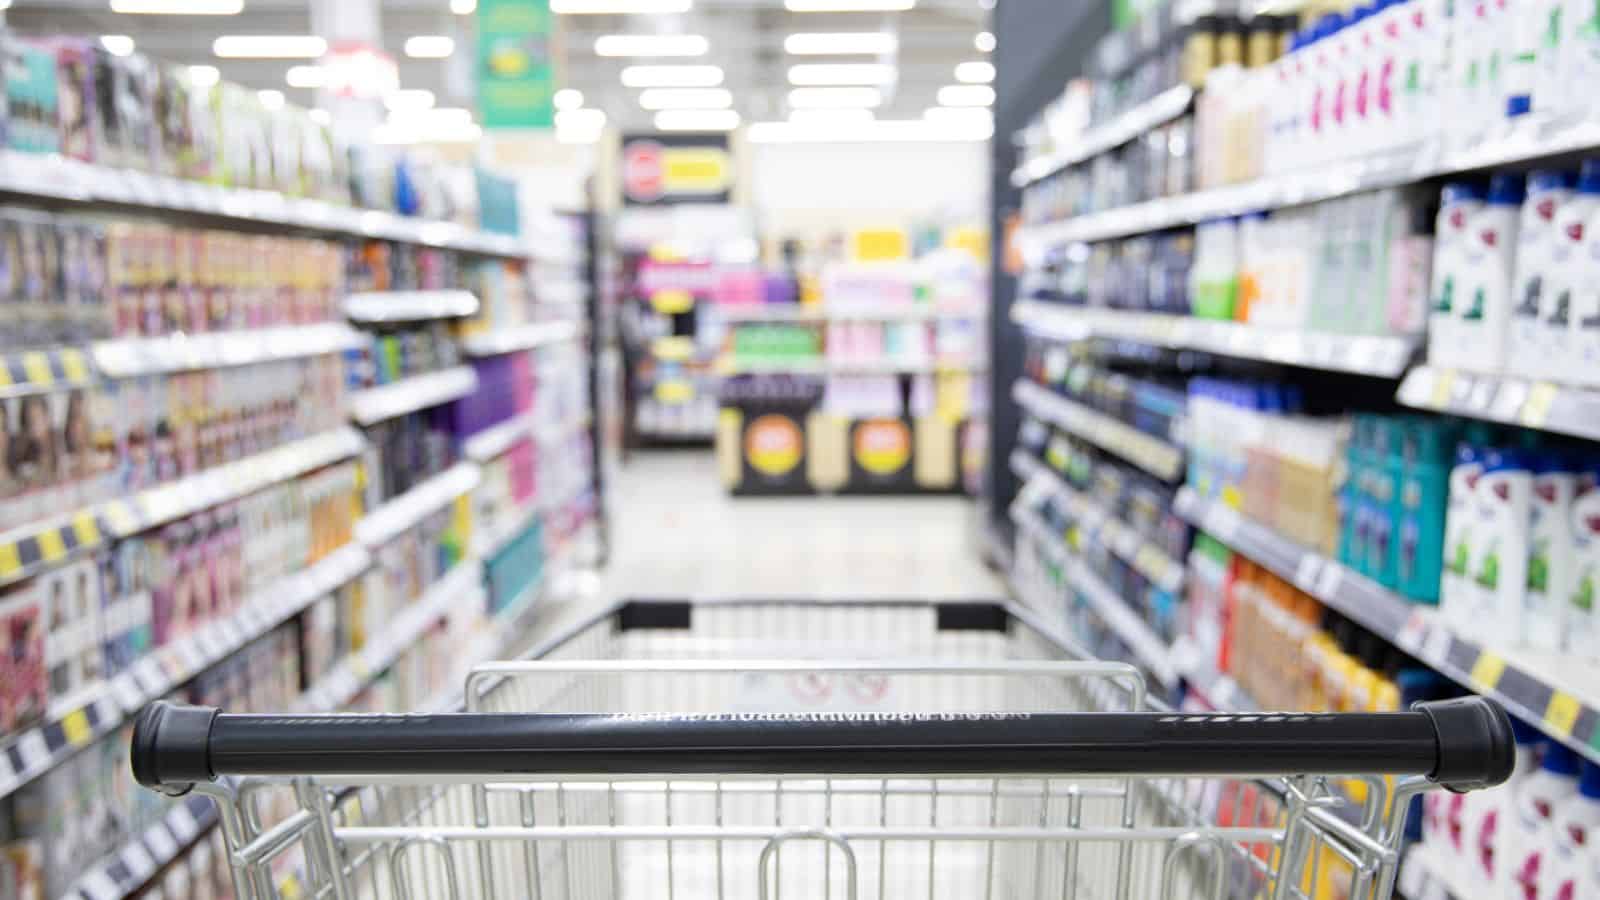 Al supermercato: prendete i prodotti in fondo? Ecco perché